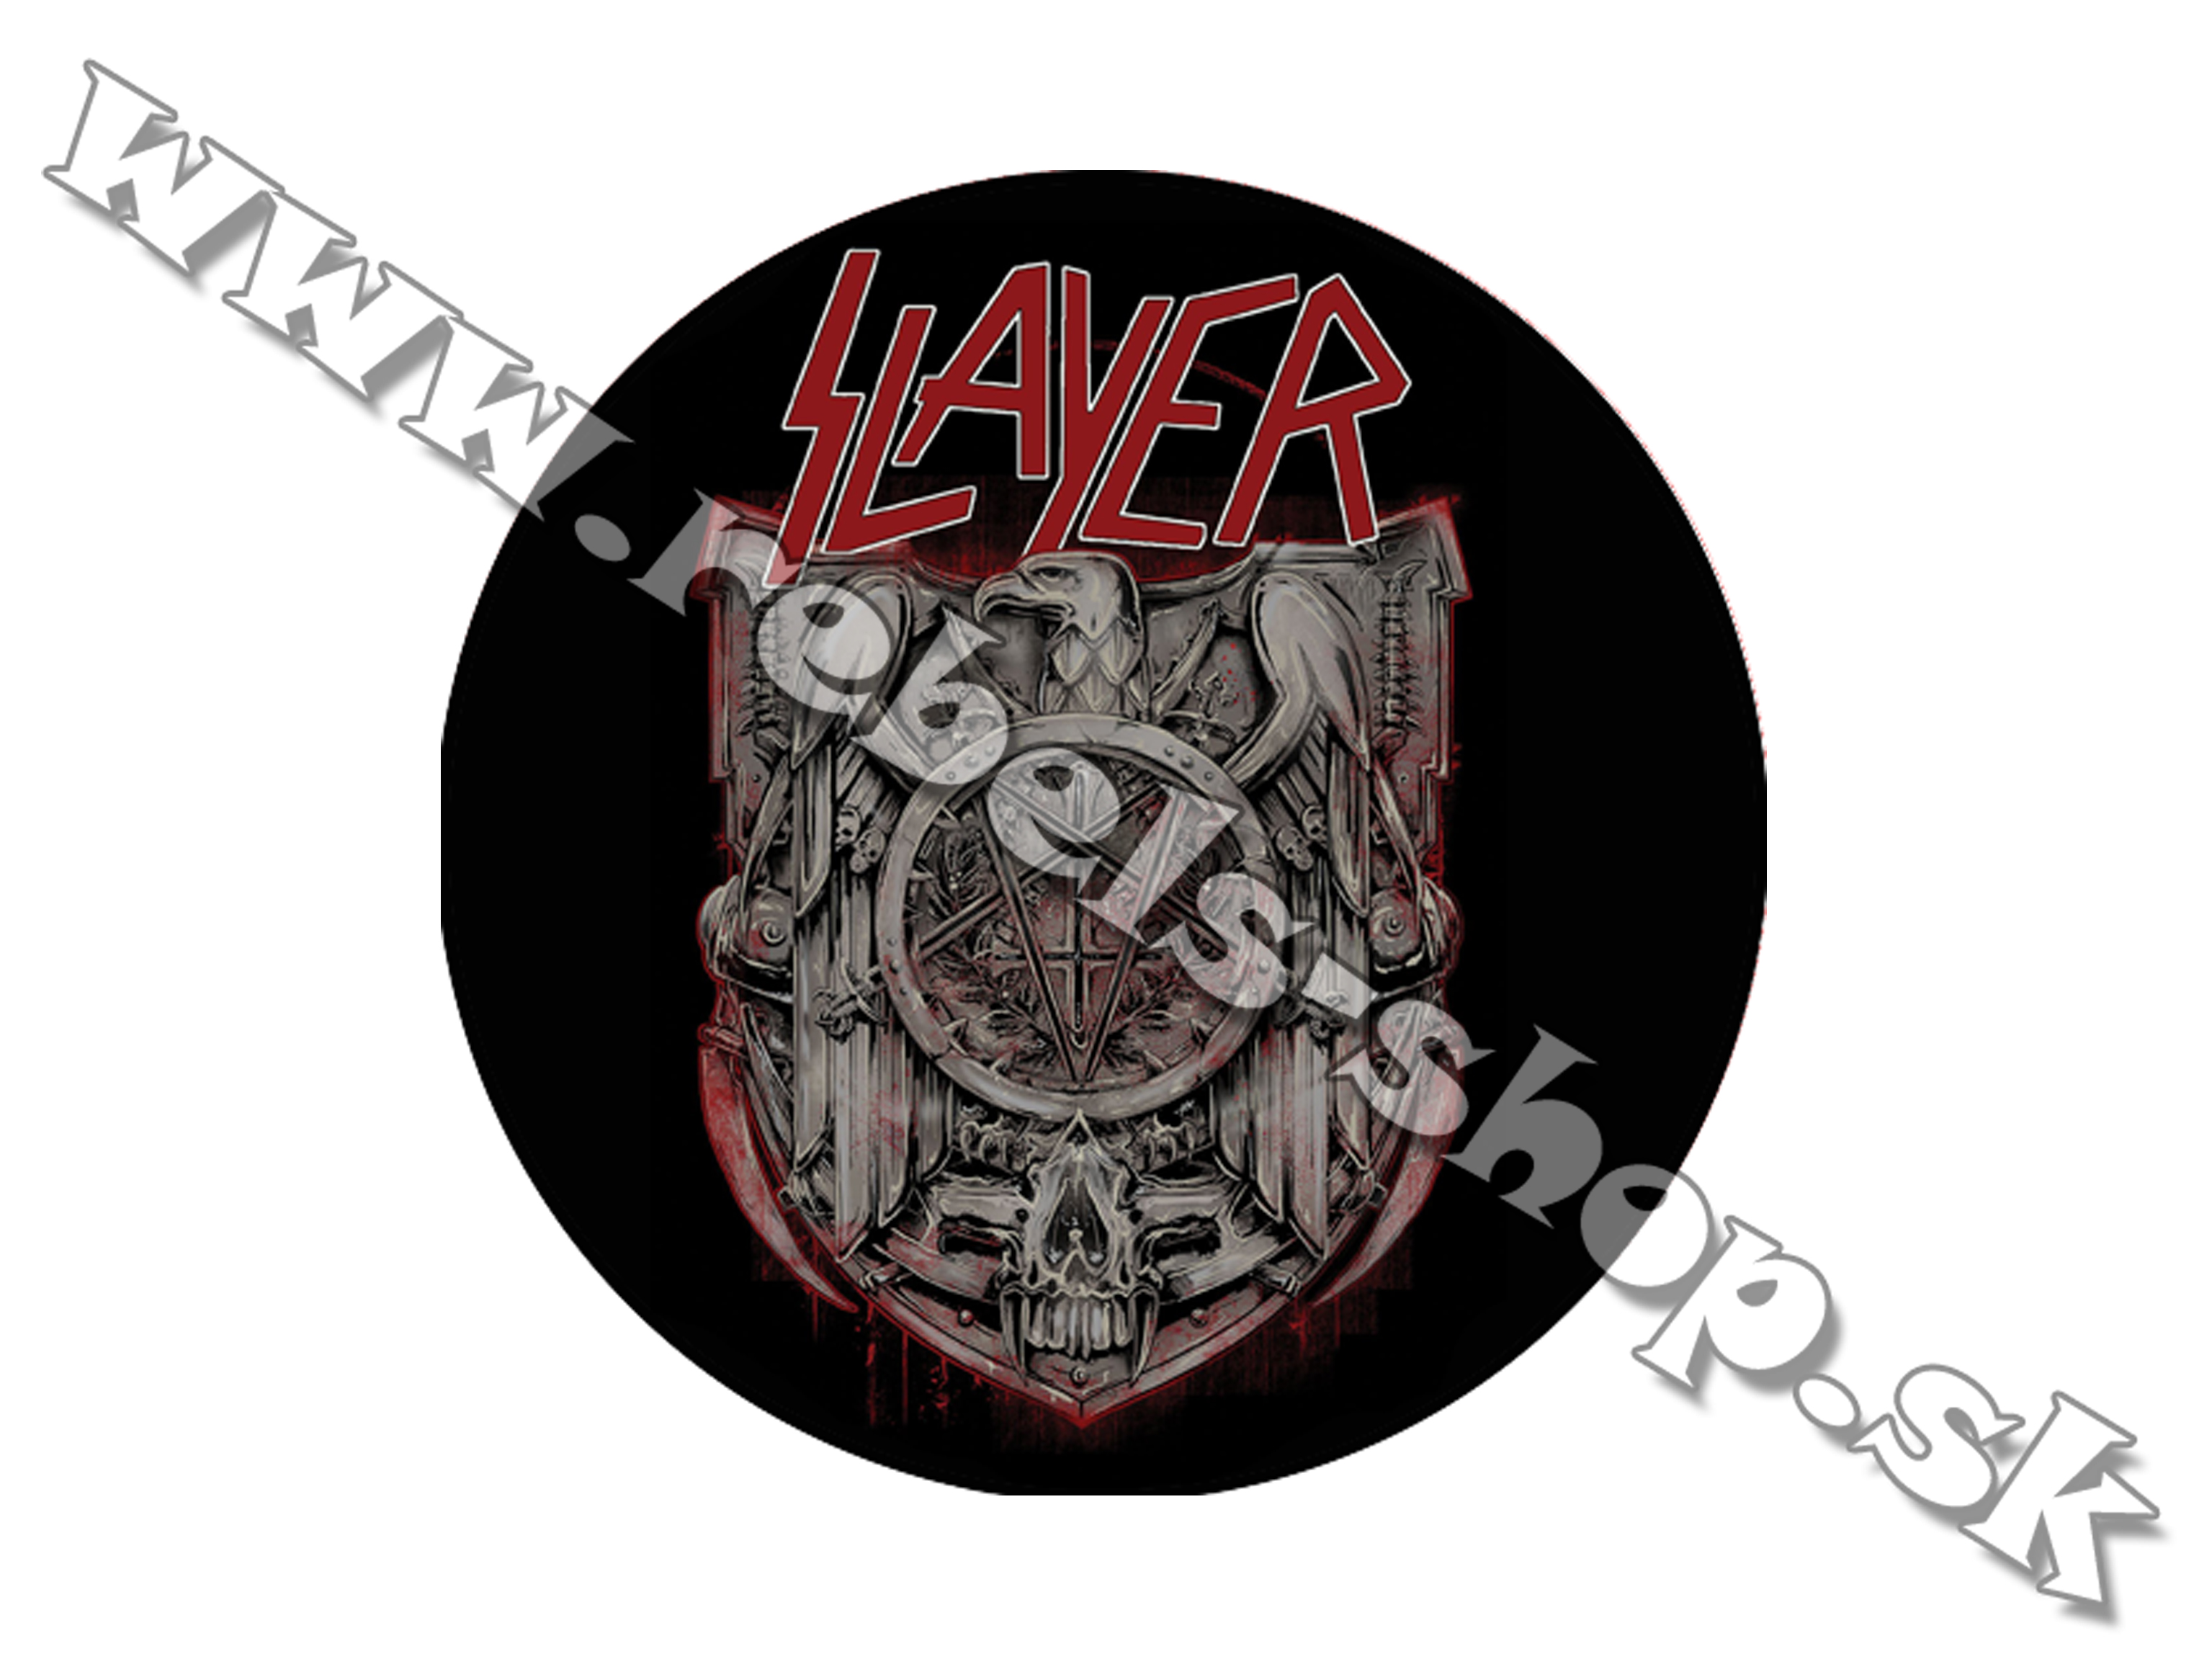 Odznak "Slayer"